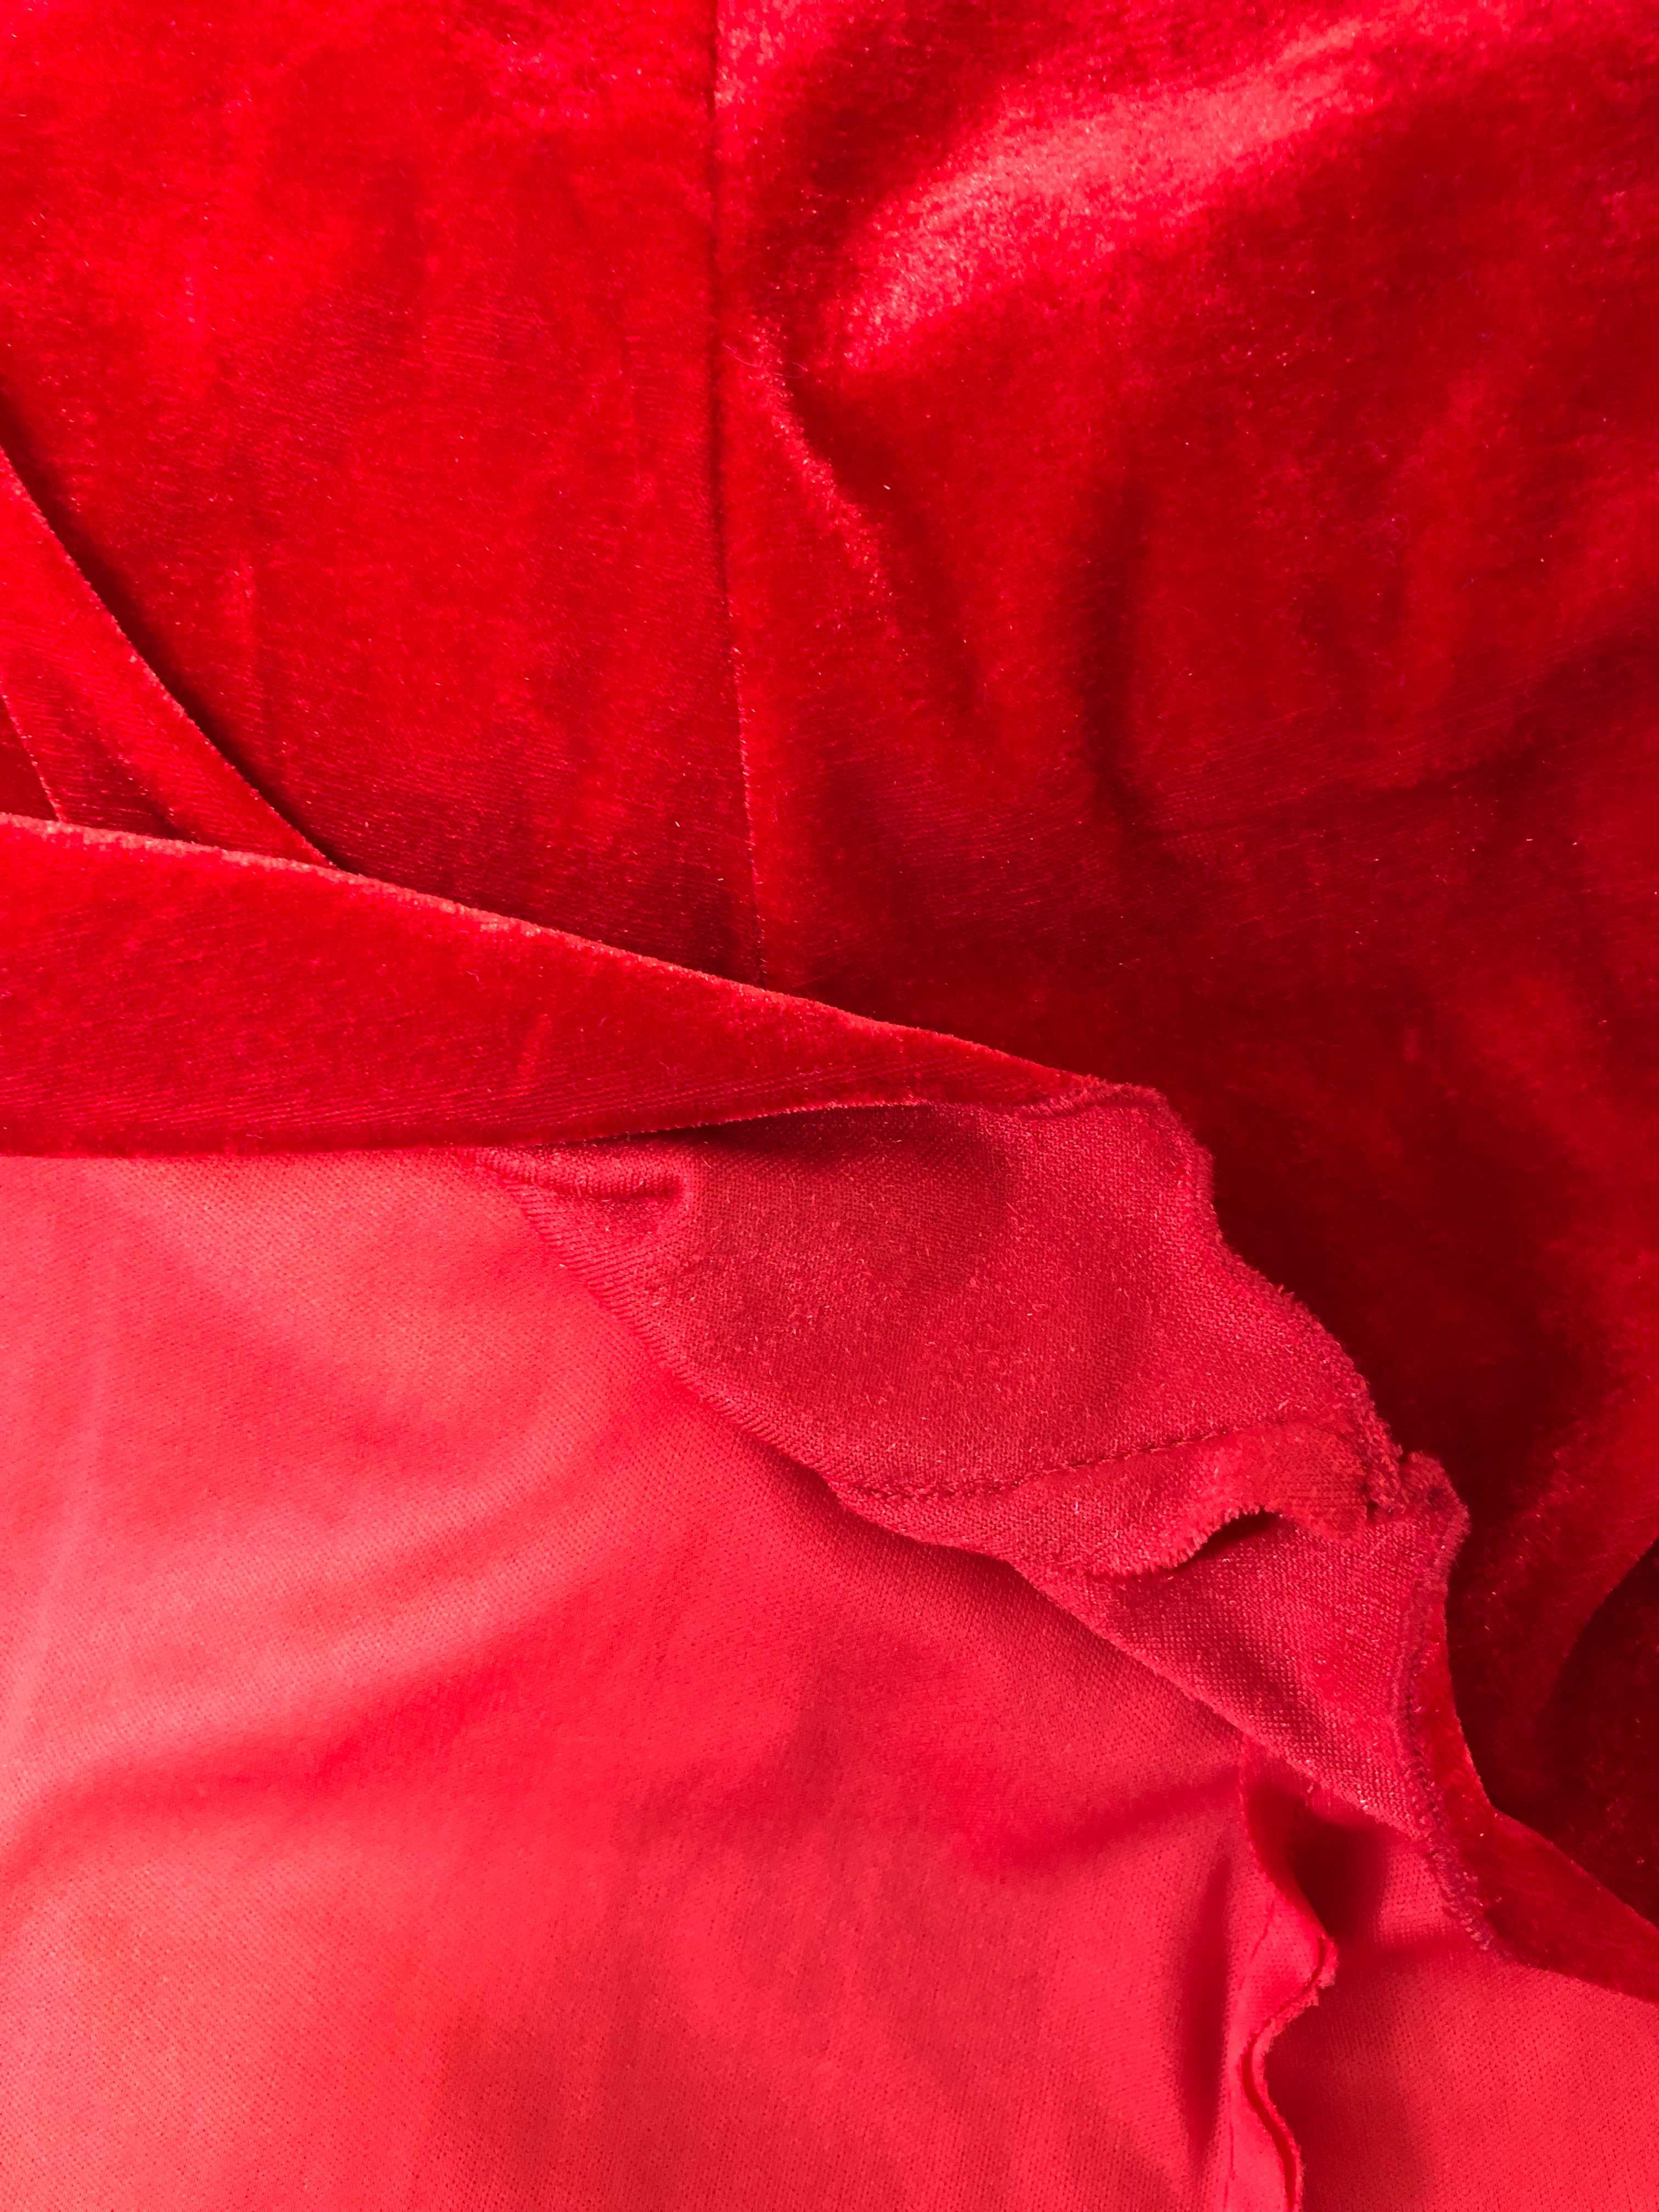 Rochie lungă de ocazie roșie de catifea cu trenă, nepurtată - 500 RON